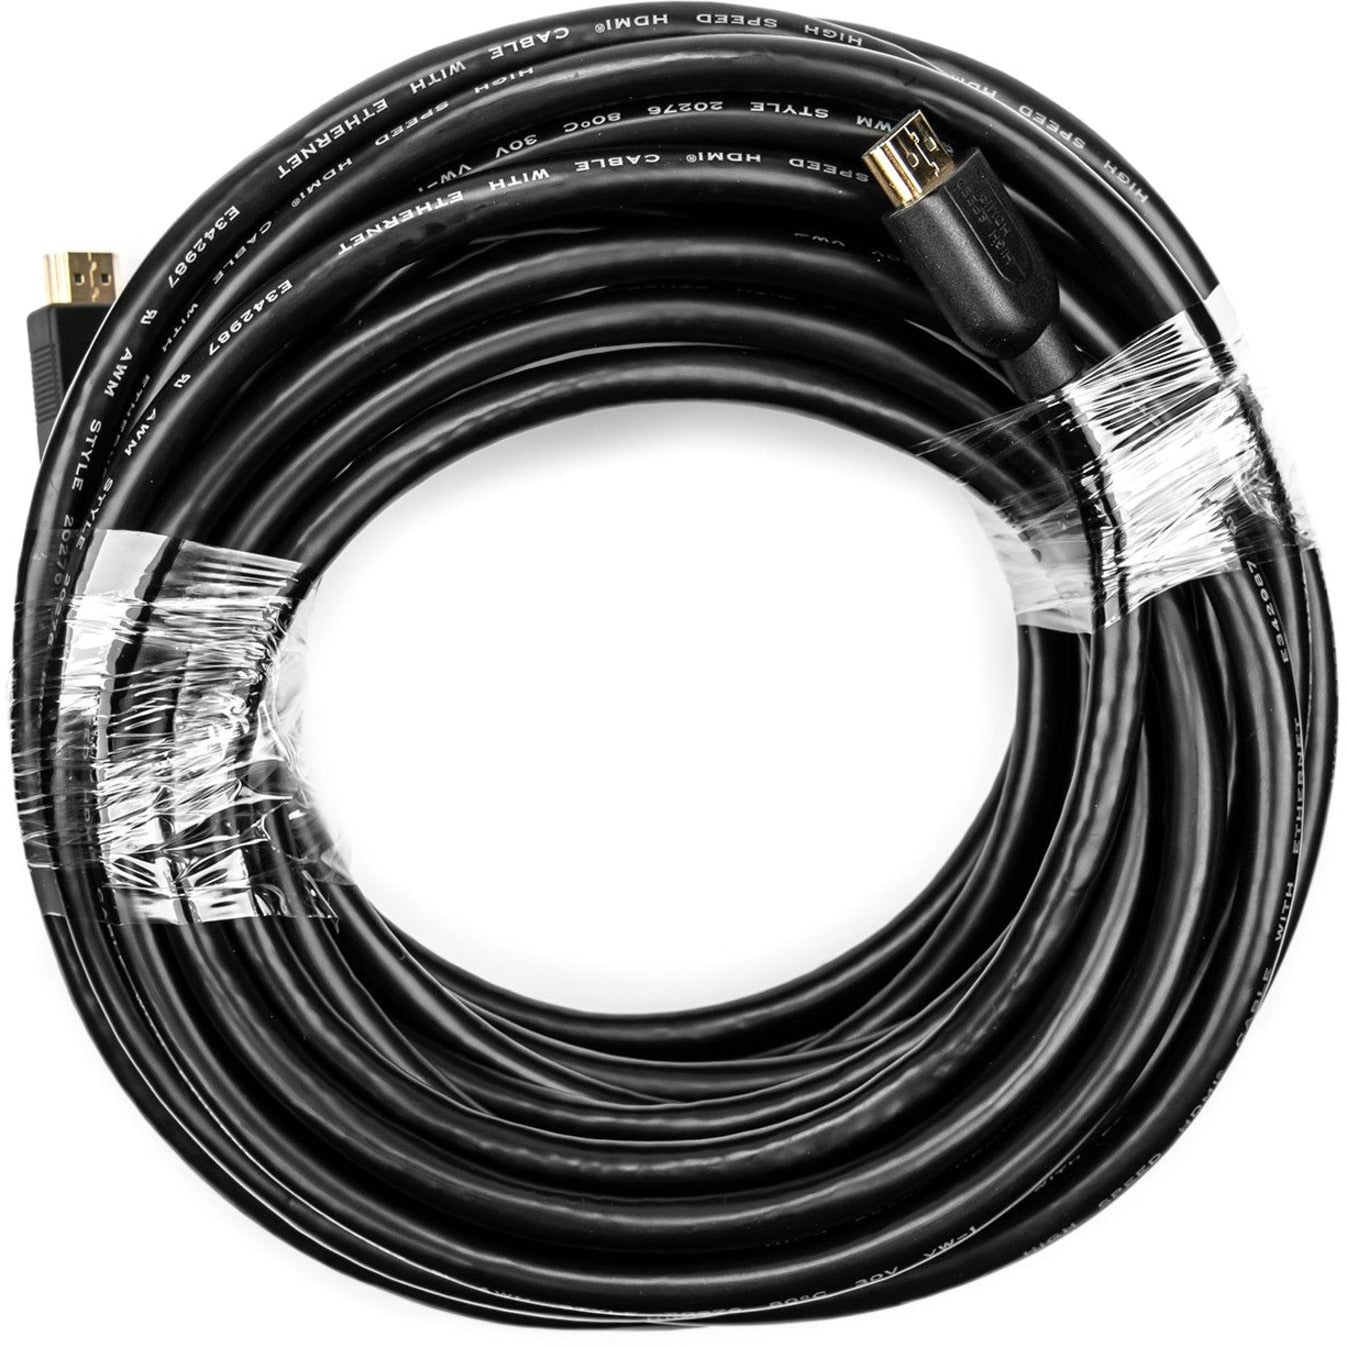 Rocstor Y10C230-B1 Premium HDMI Audio/Video Cable, 50 ft, 4K 60Hz, Gold-Plated Connectors